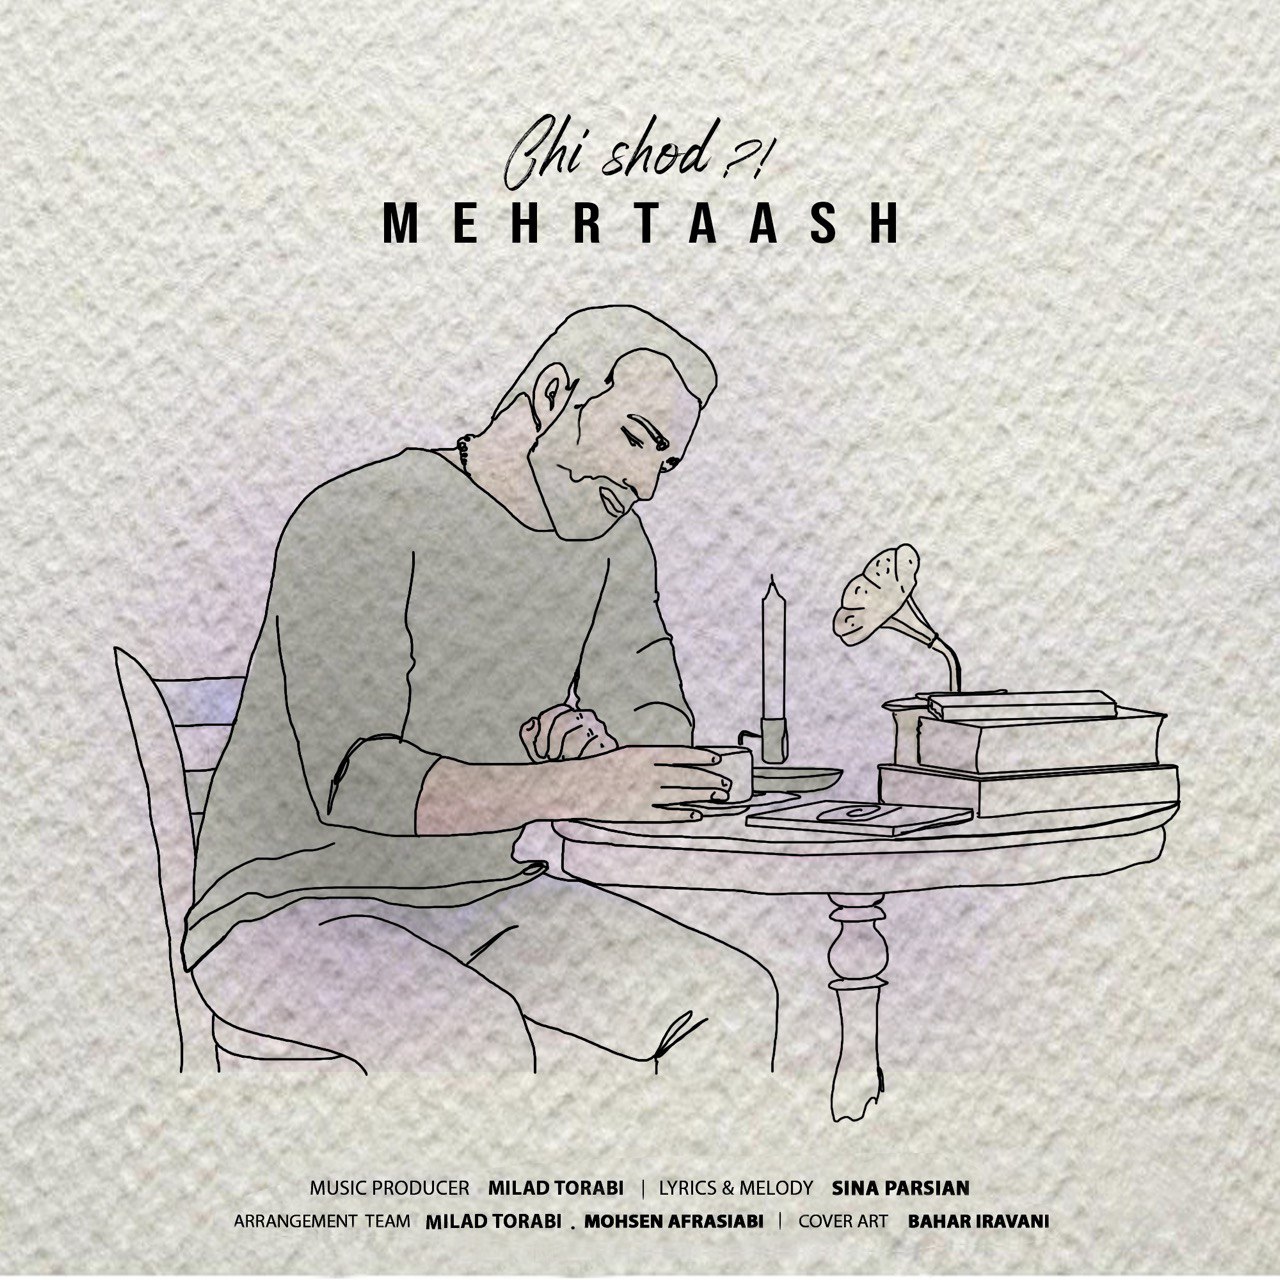  دانلود آهنگ جدید مهرتاش - چی شد؟ | Download New Music By Mehrtaash - Chi Shod